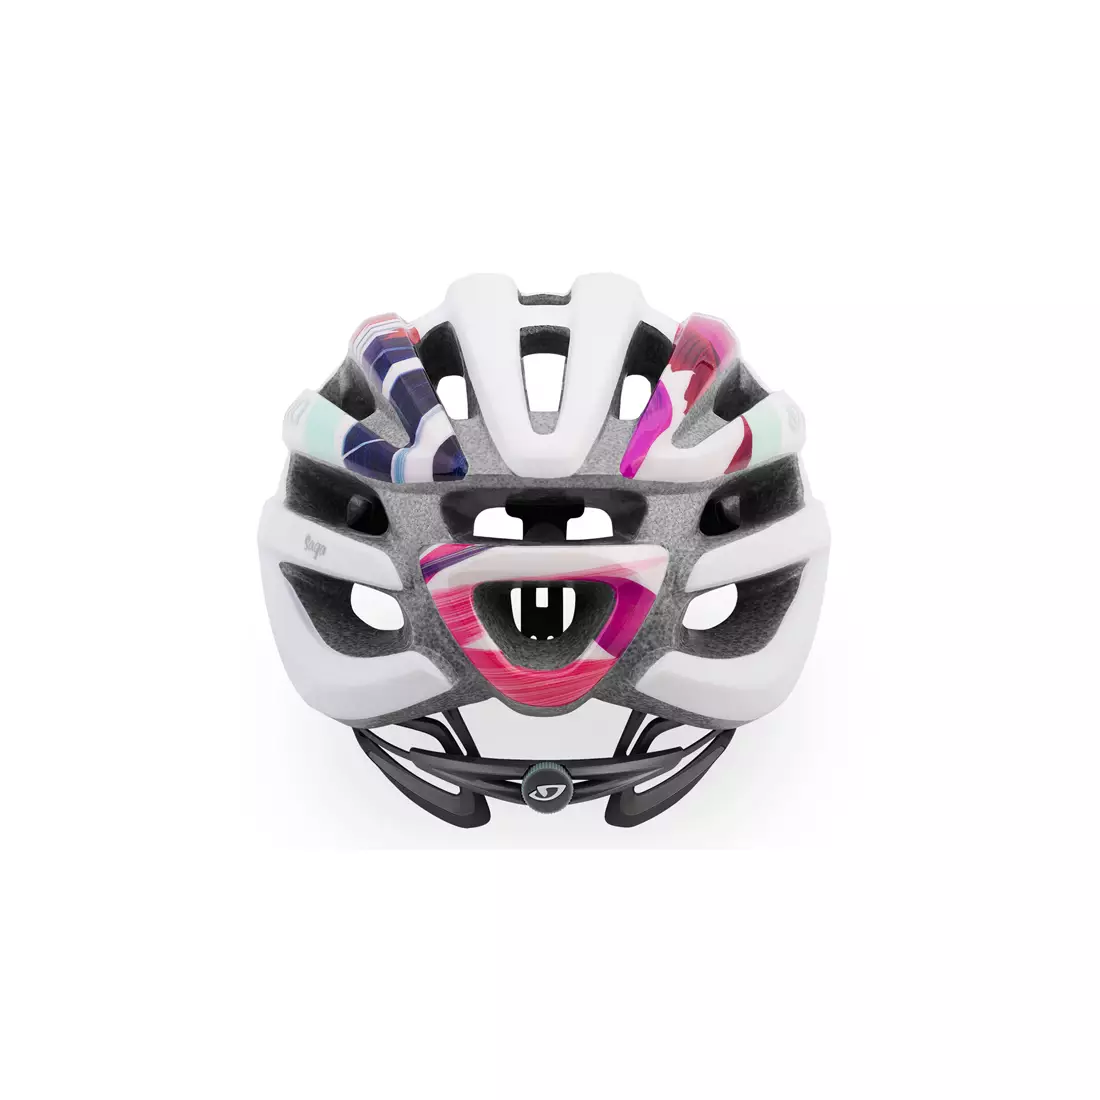 GIRO SAGA - women's bicycle helmet, white